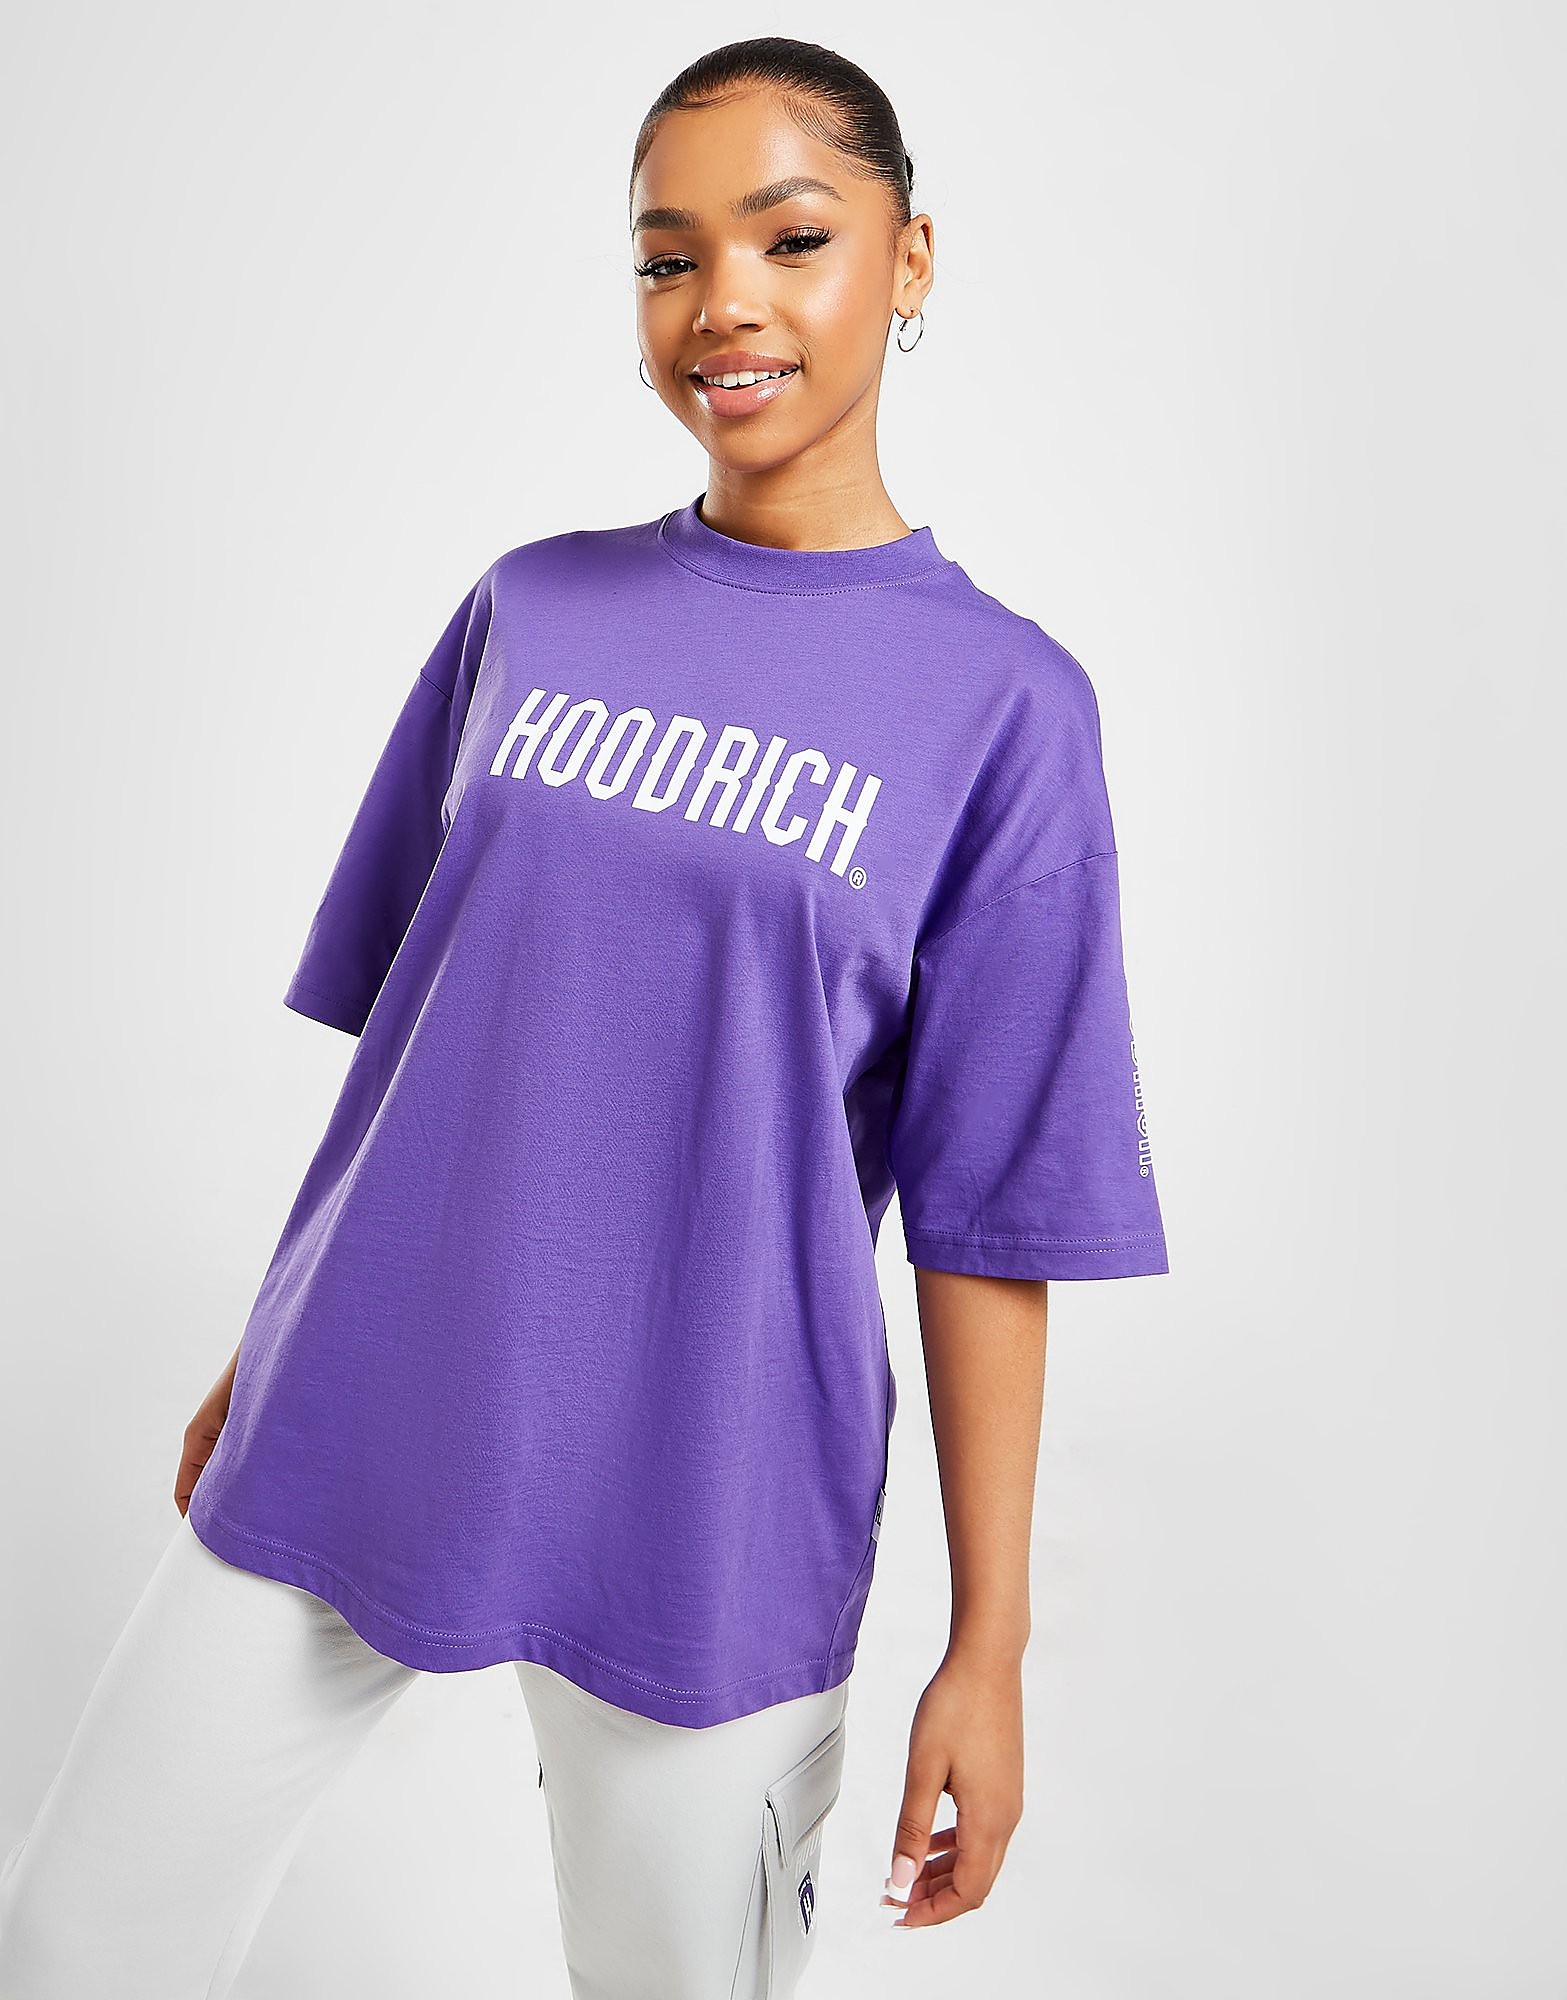 Hoodrich Azure T-shirt Dam, Lila